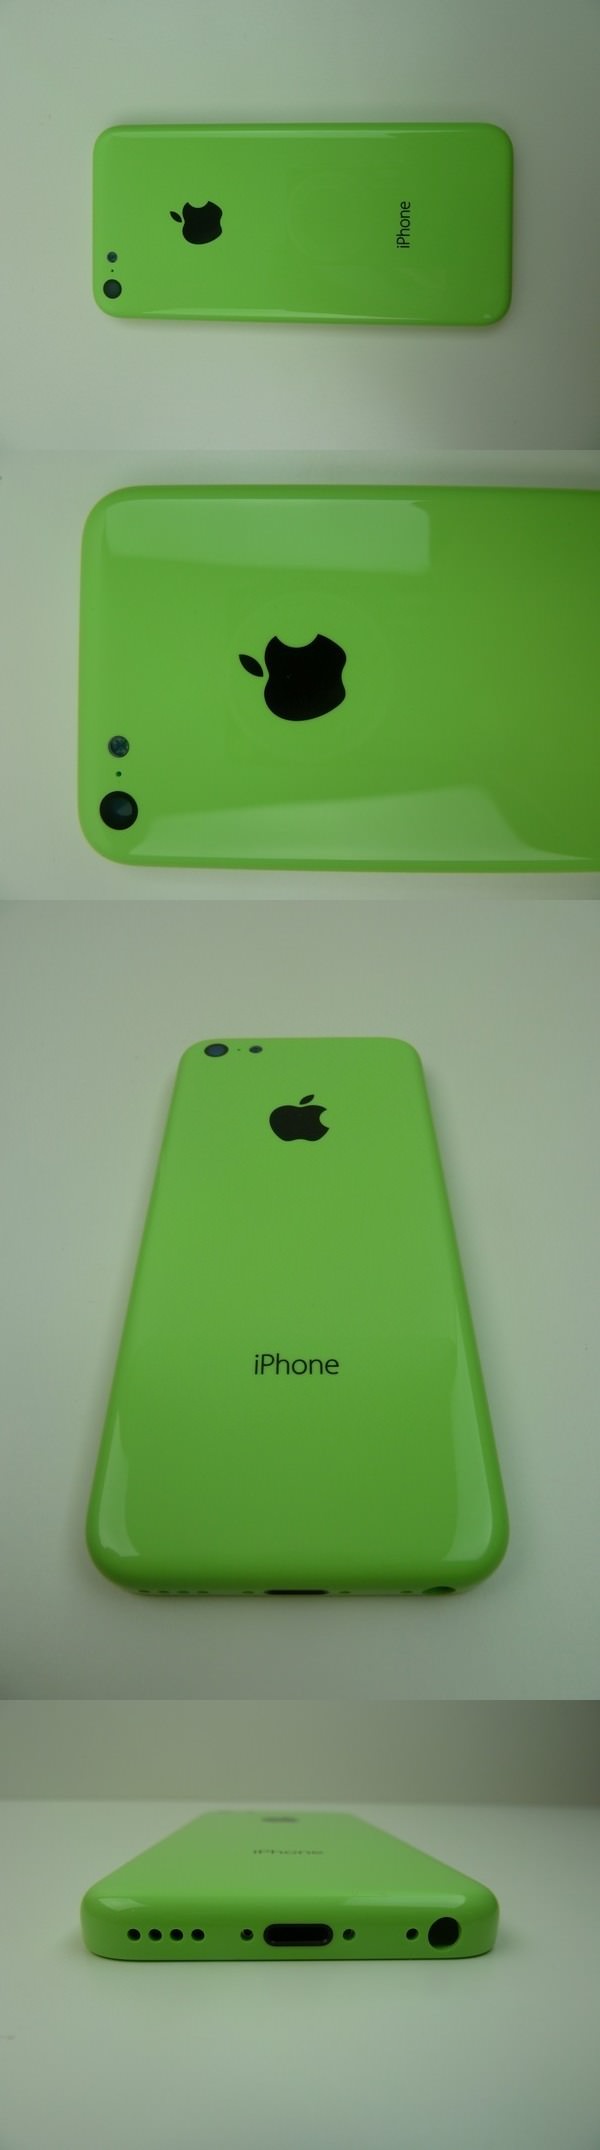 iPhone 5C зеленого цвета